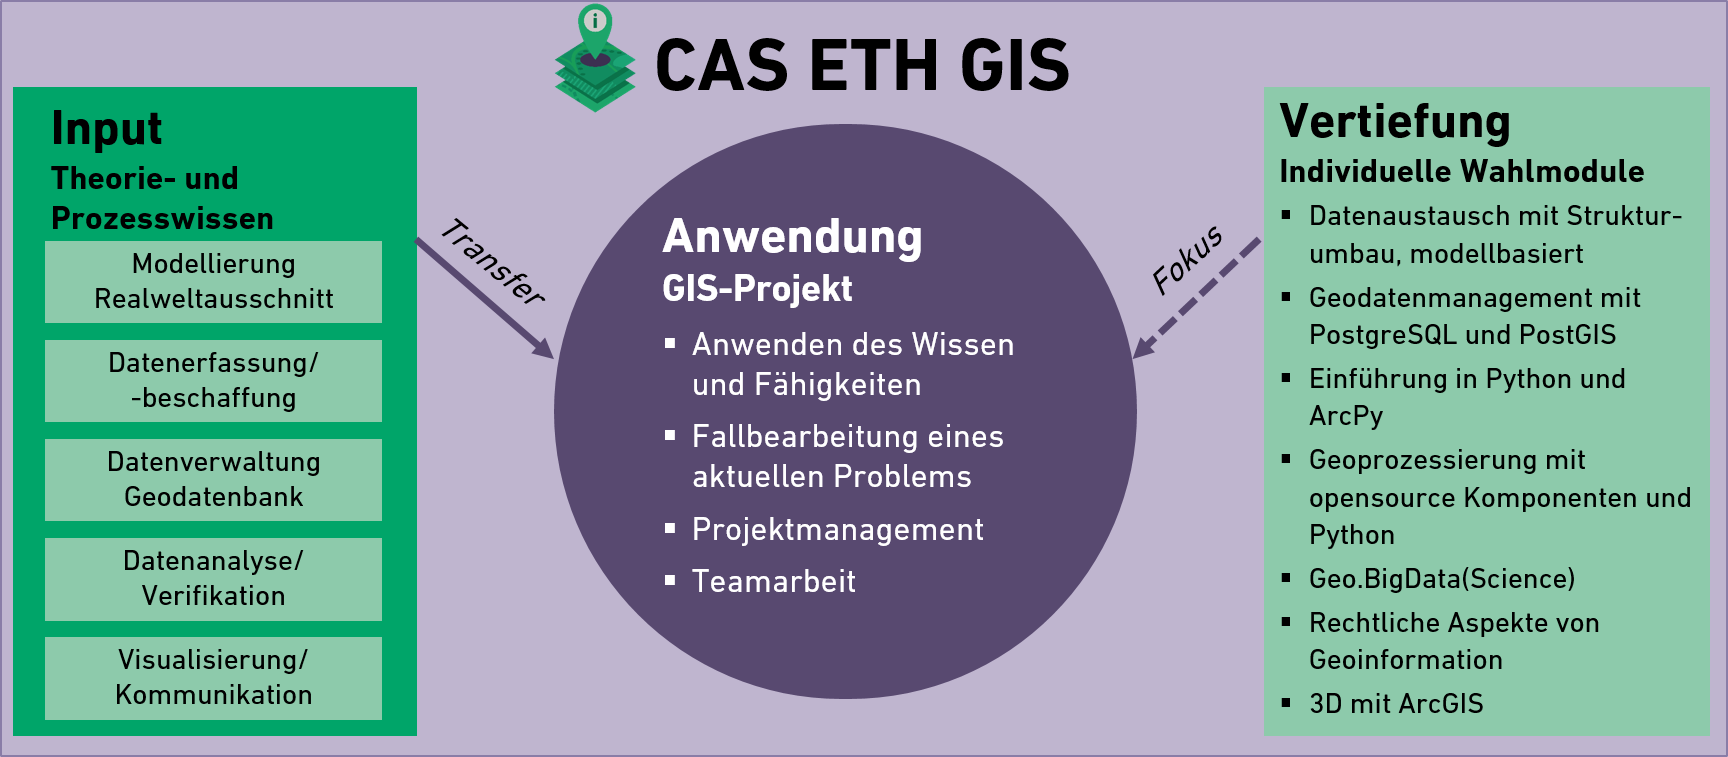 CAS ETH GIS